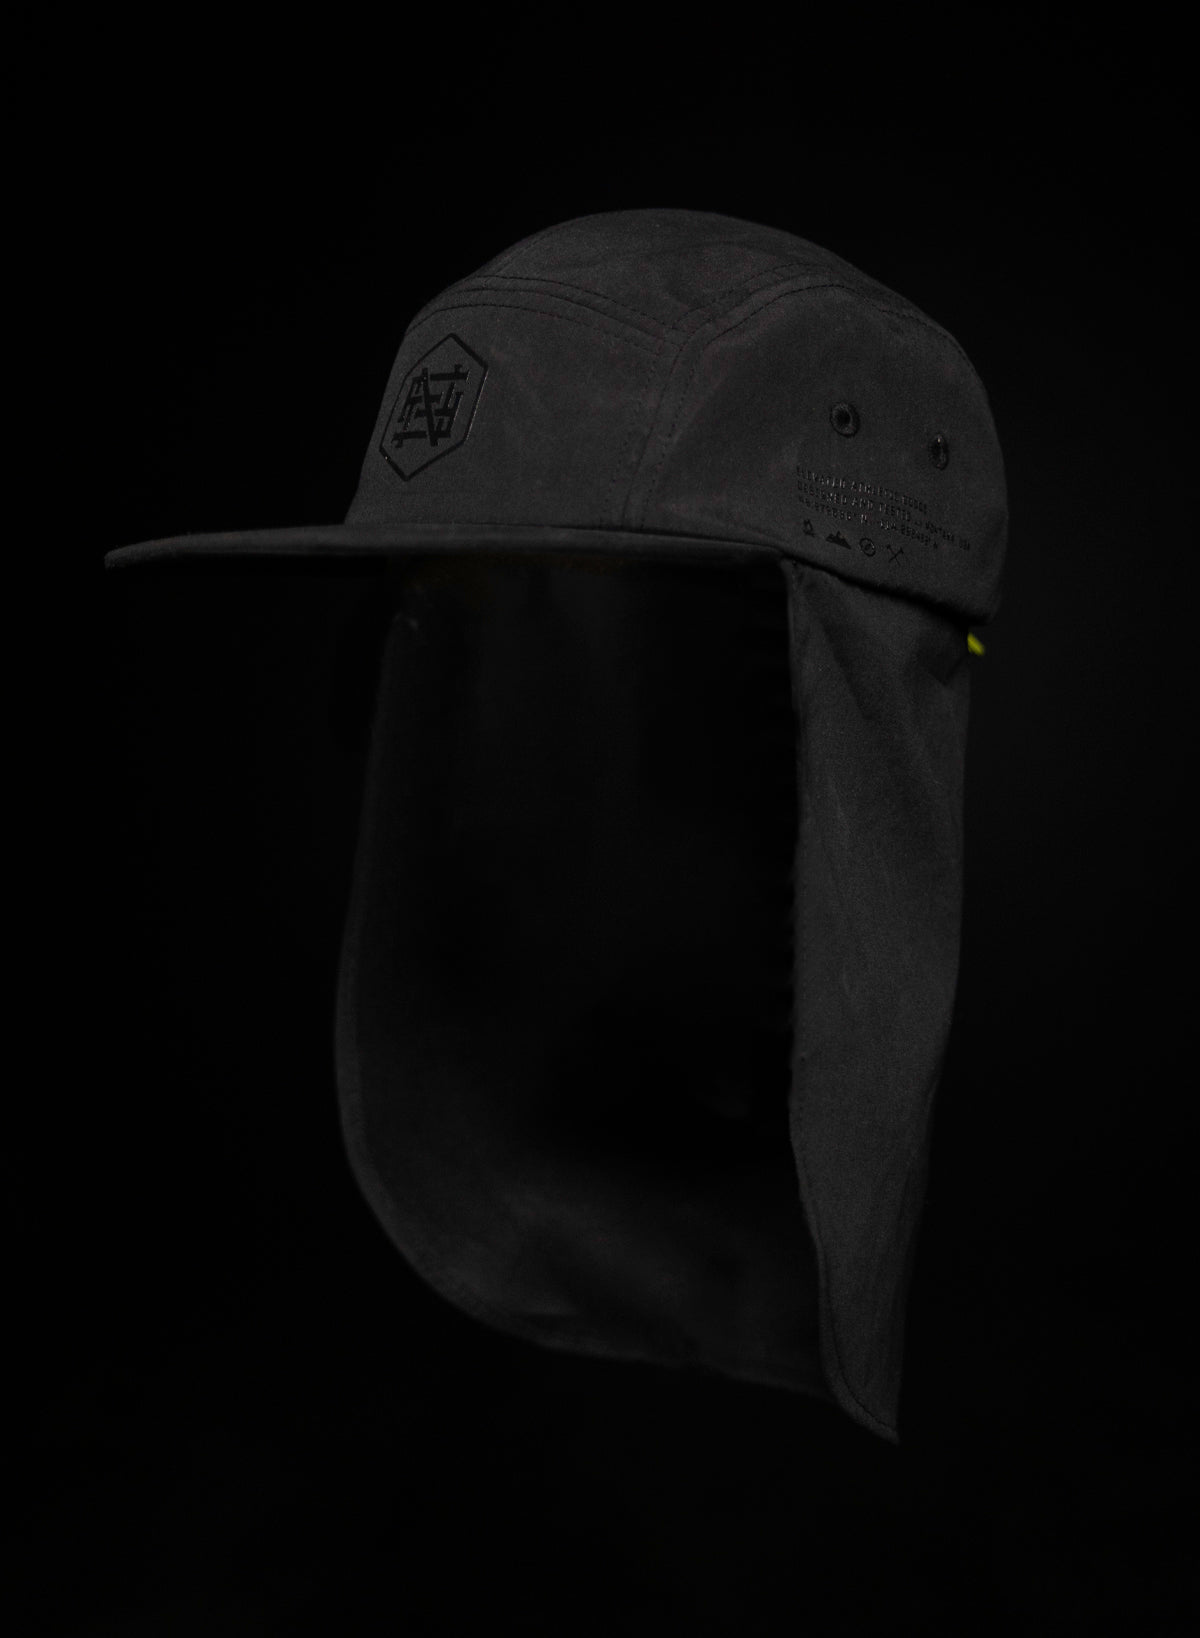 APEX HAT